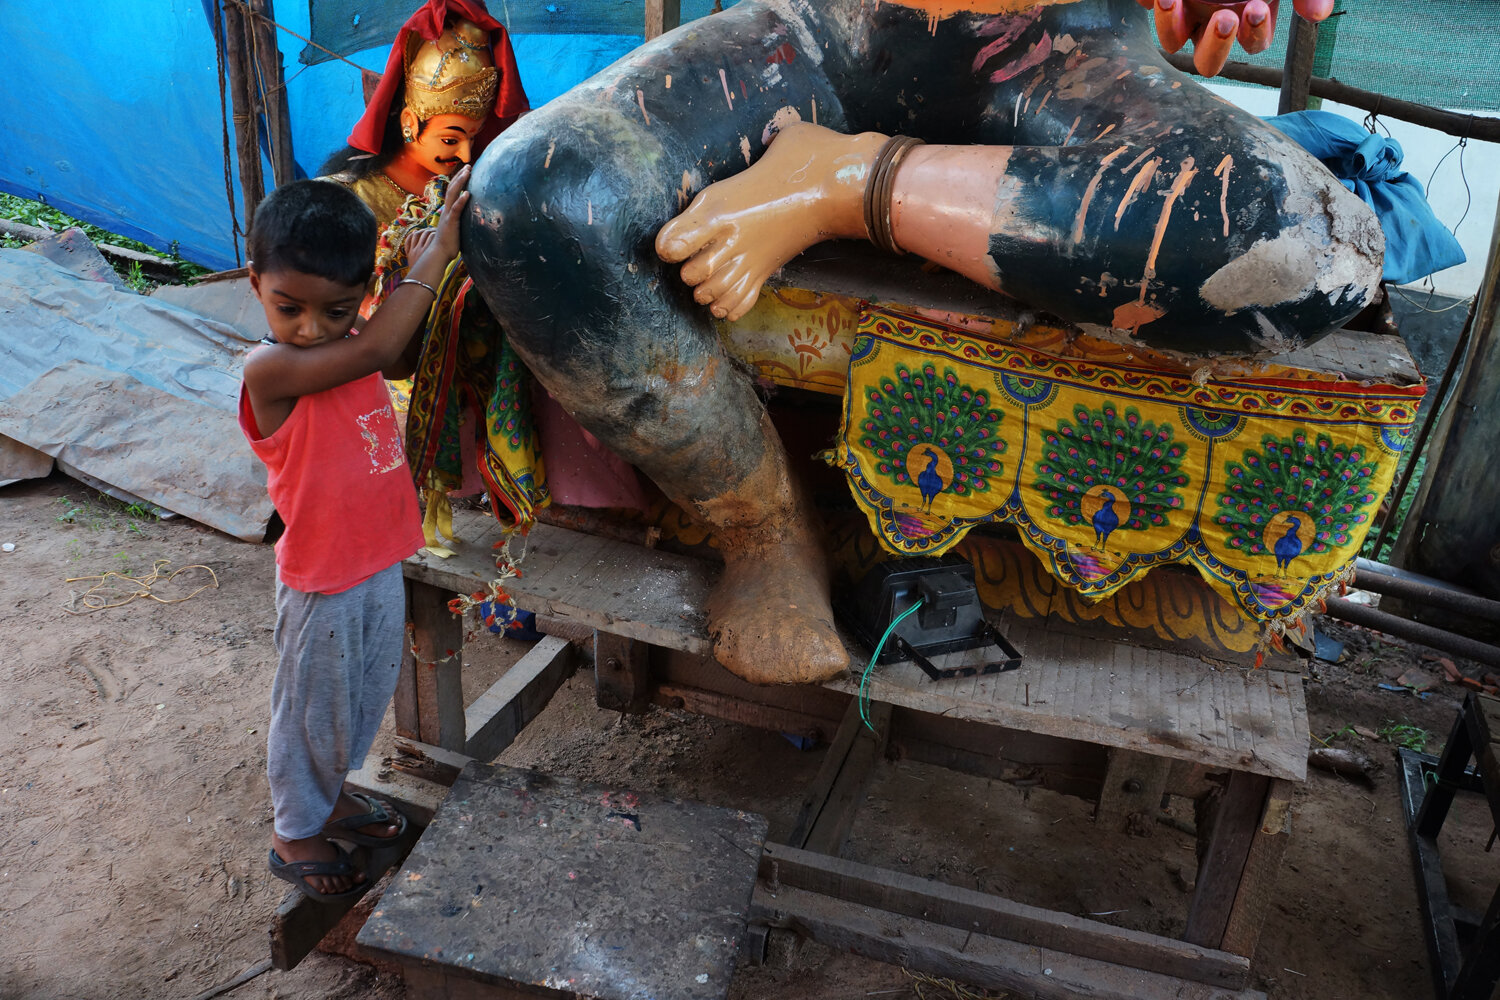 Boy at the Foot of a Deity, Kerela. 2014